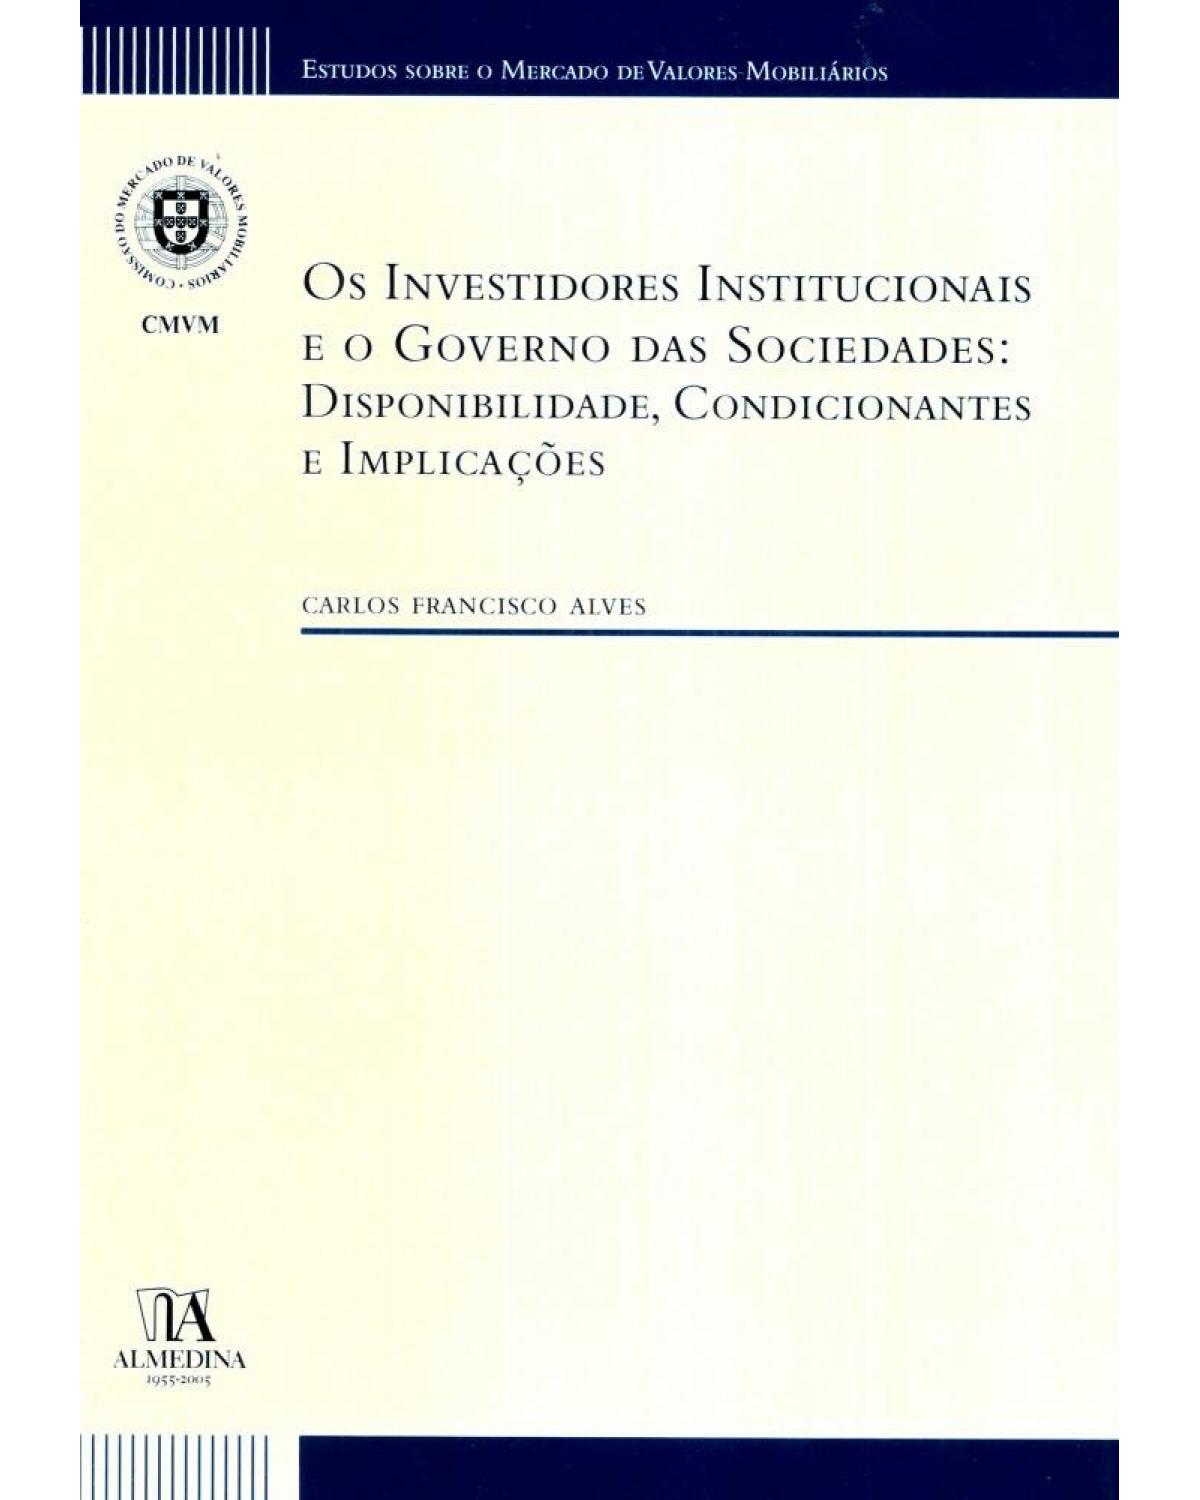 Os investidores institucionais e o governo das sociedades - disponibilidade, condicionantes e implicações - 1ª Edição | 2005